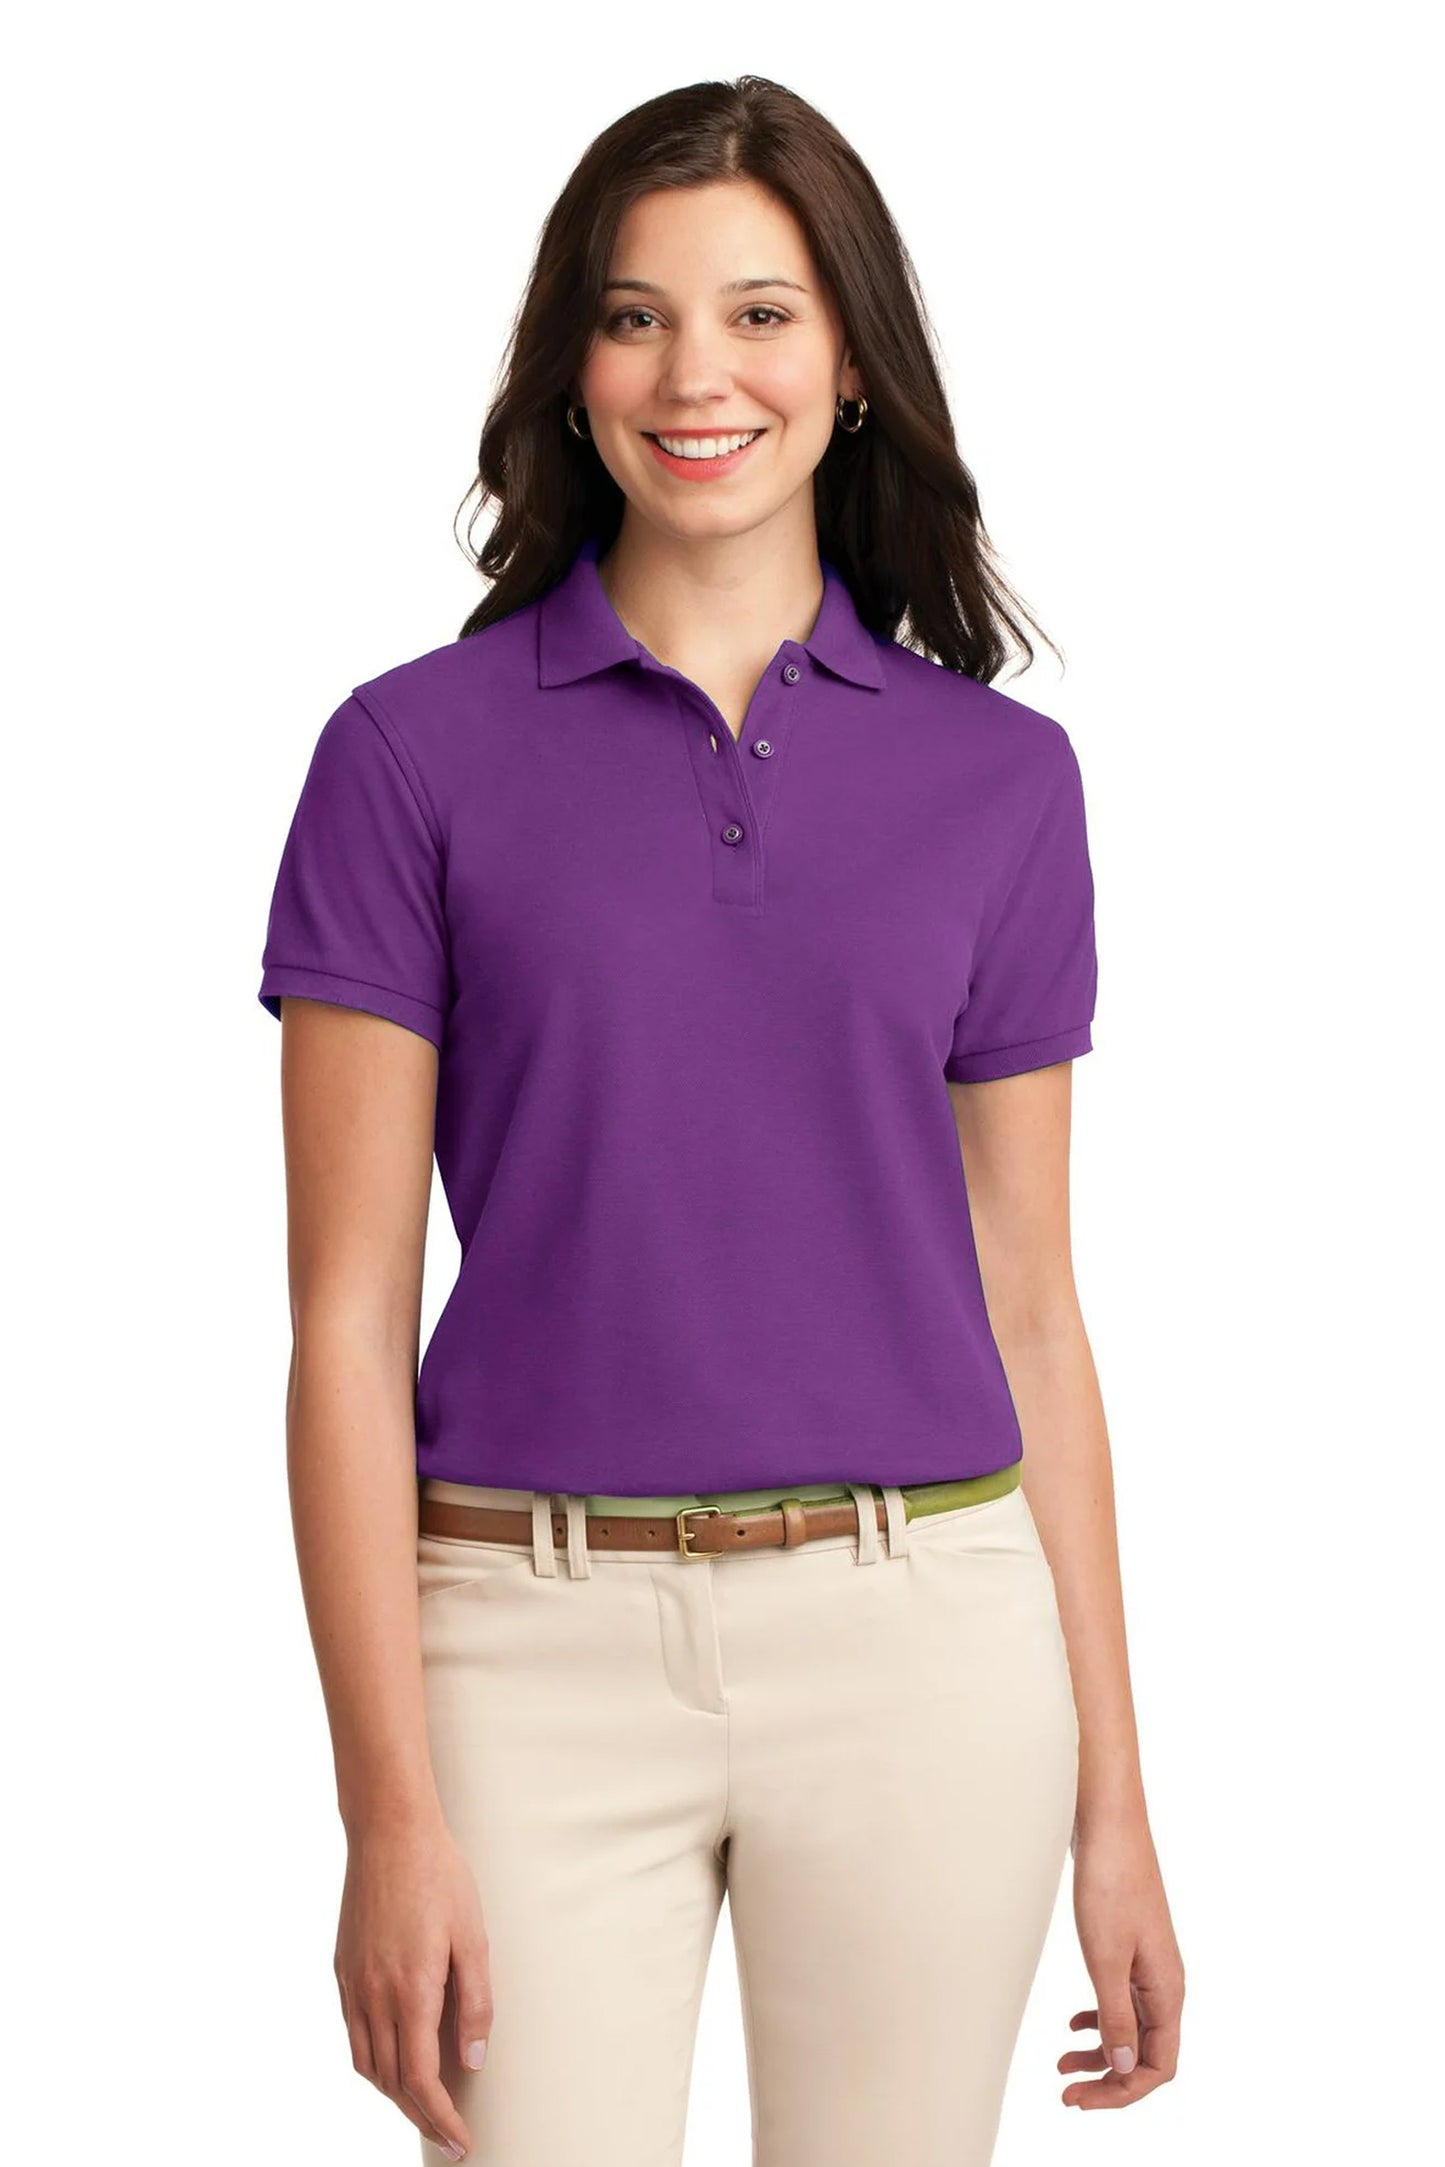 Women's Purple Polo Shirt